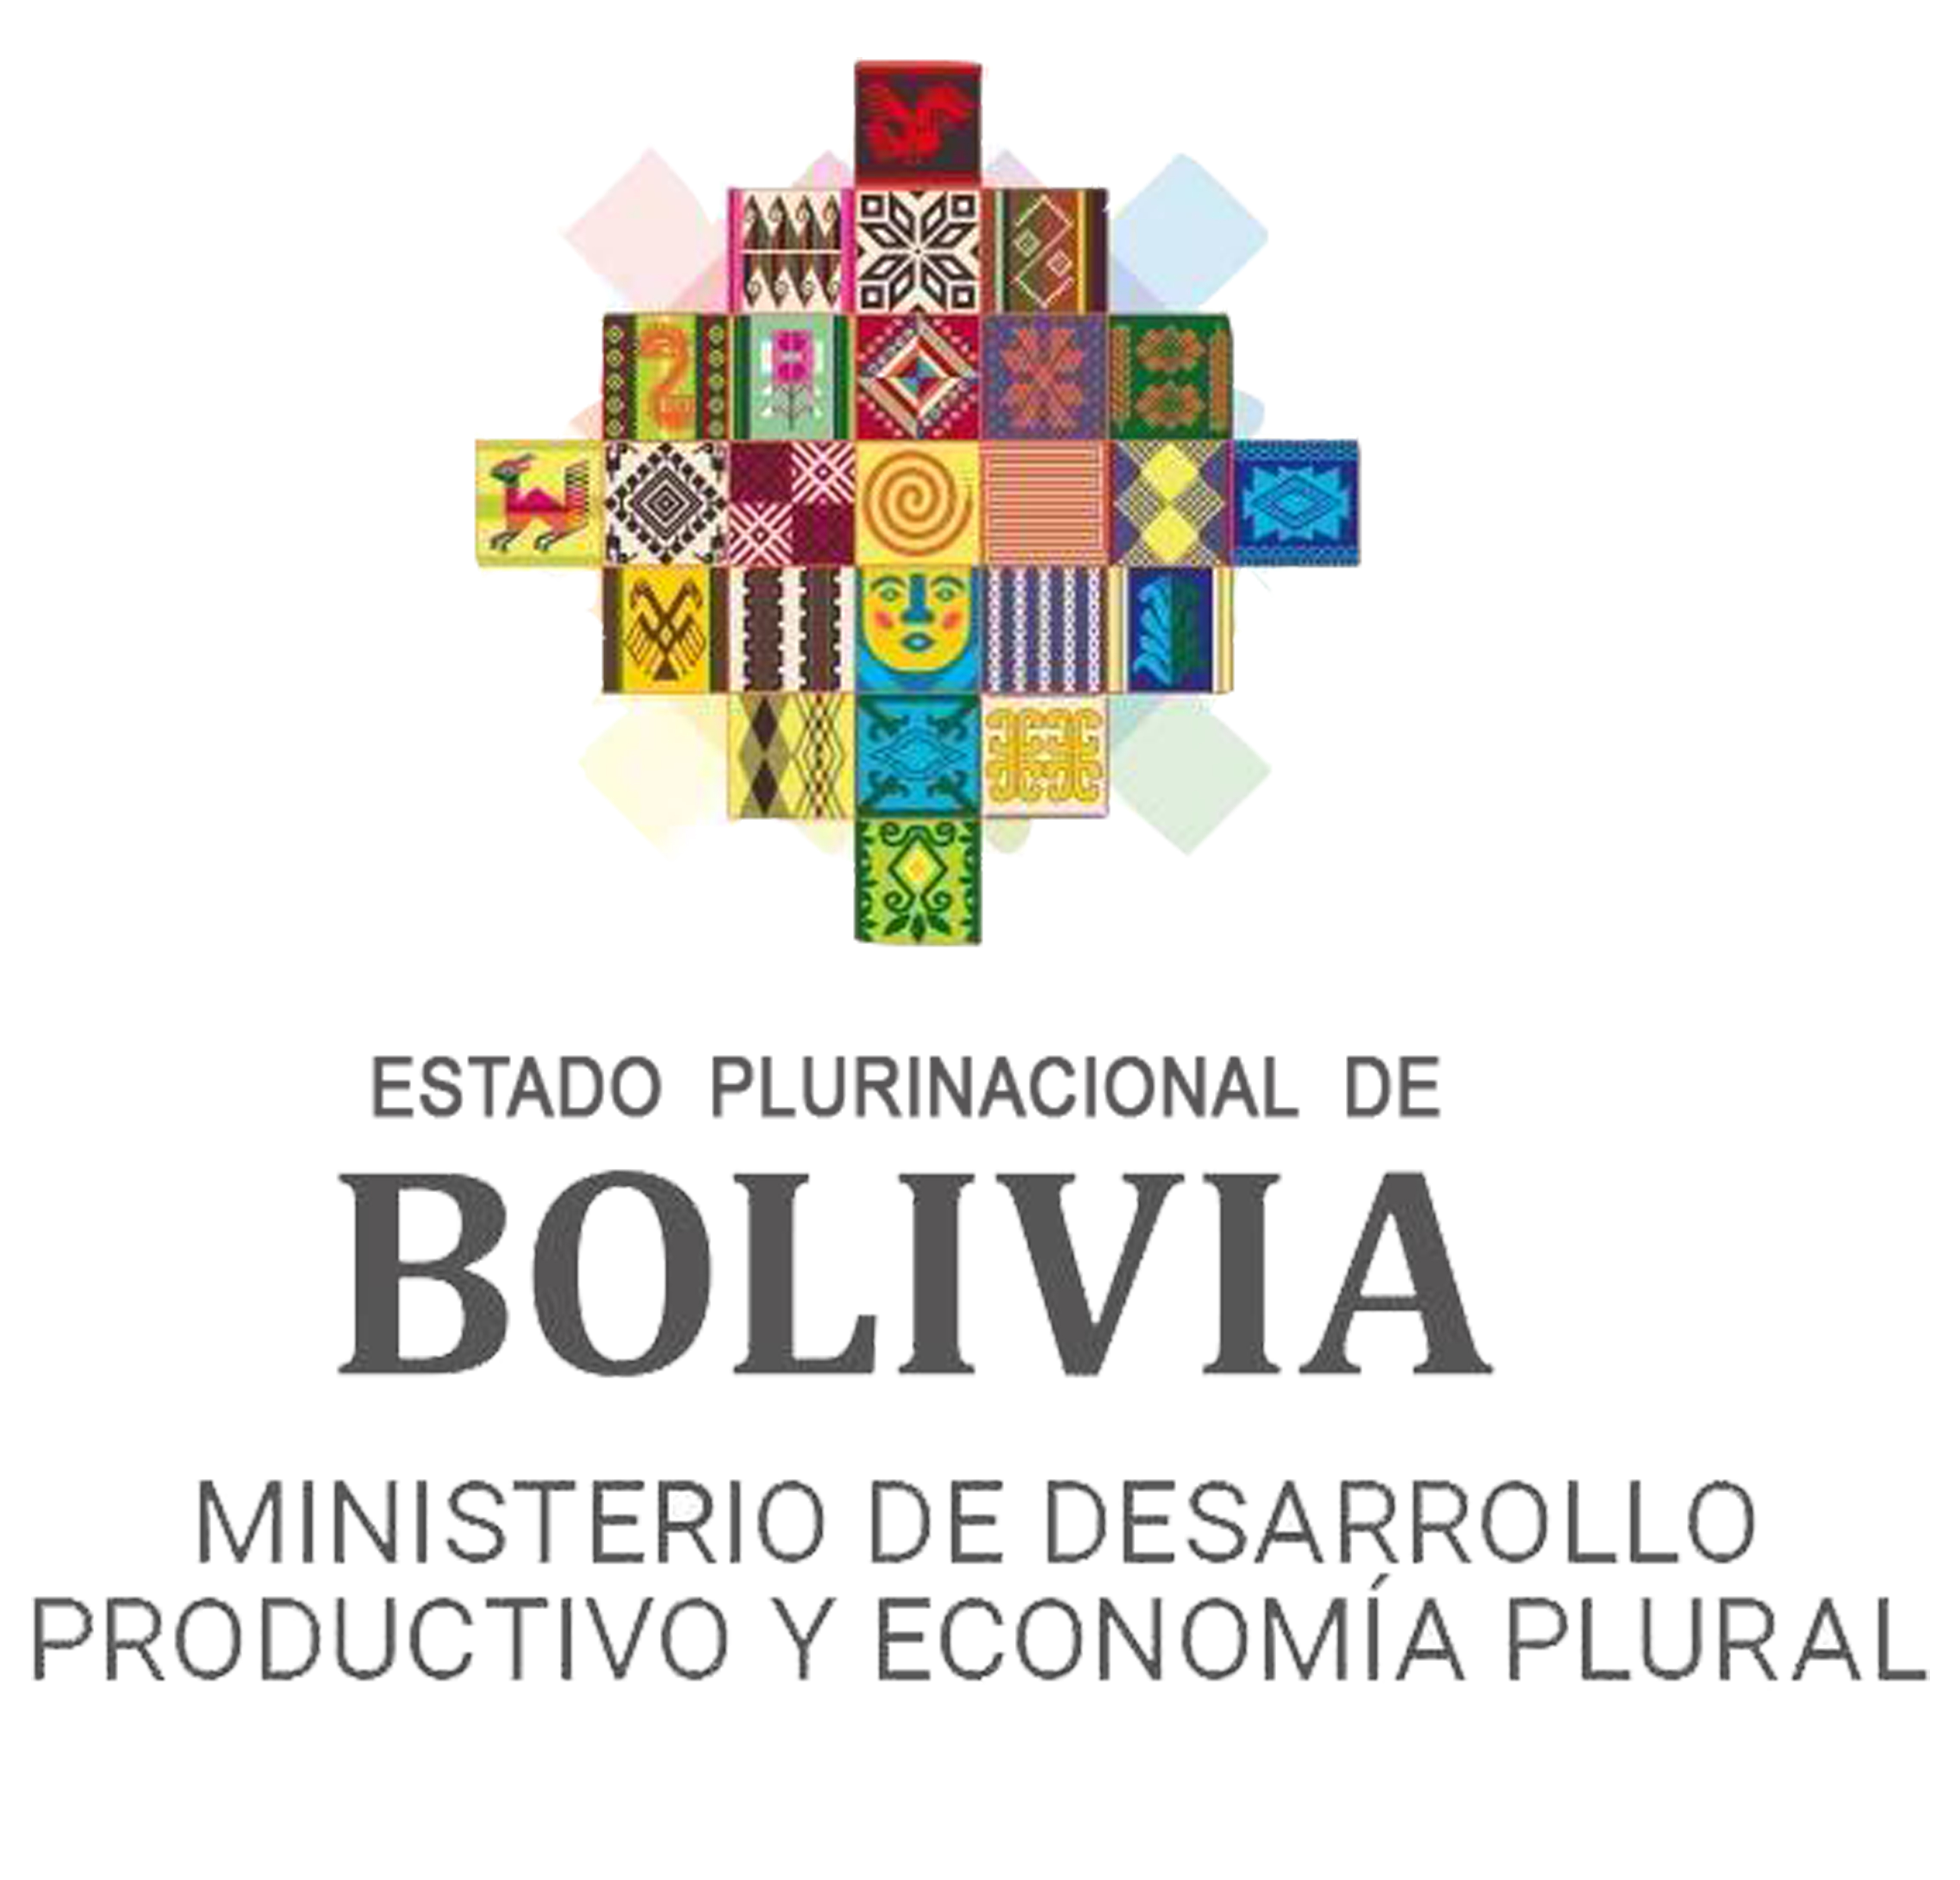 LOGO OFICIAL INSUMOS BOLIVIA 5